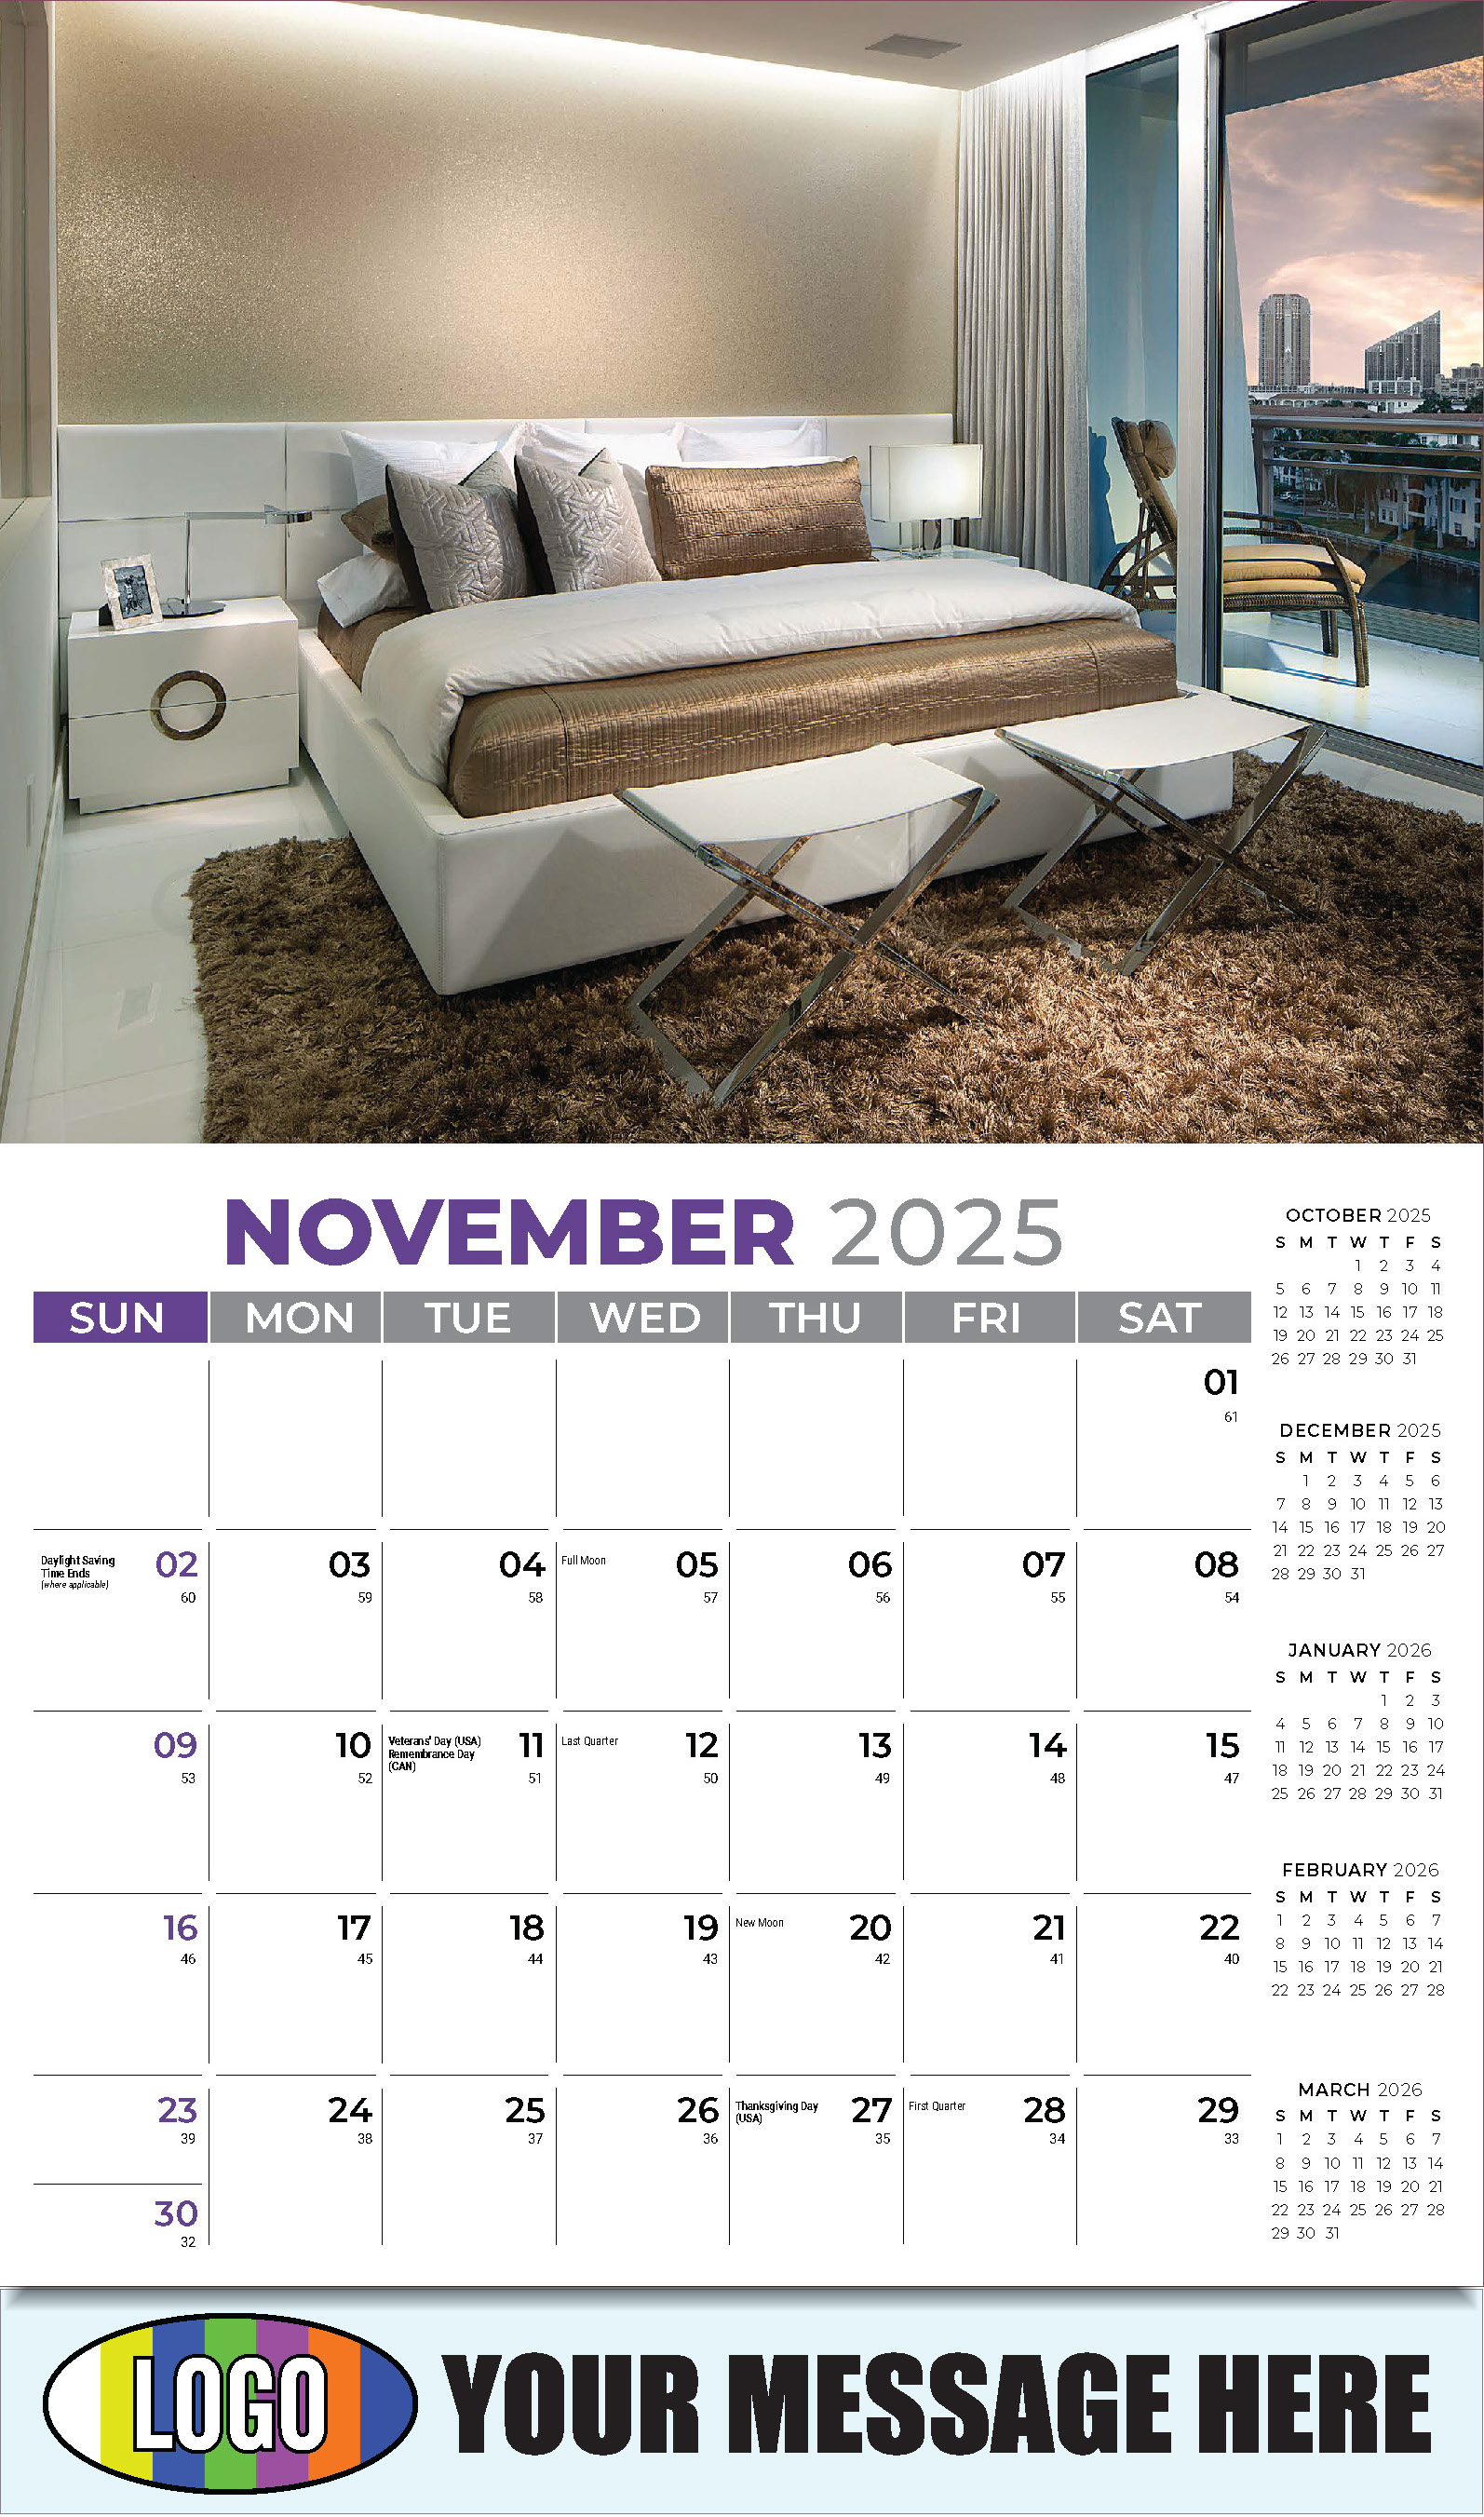 Decor and Design 2025 Interior Design Business Promotional Calendar - November